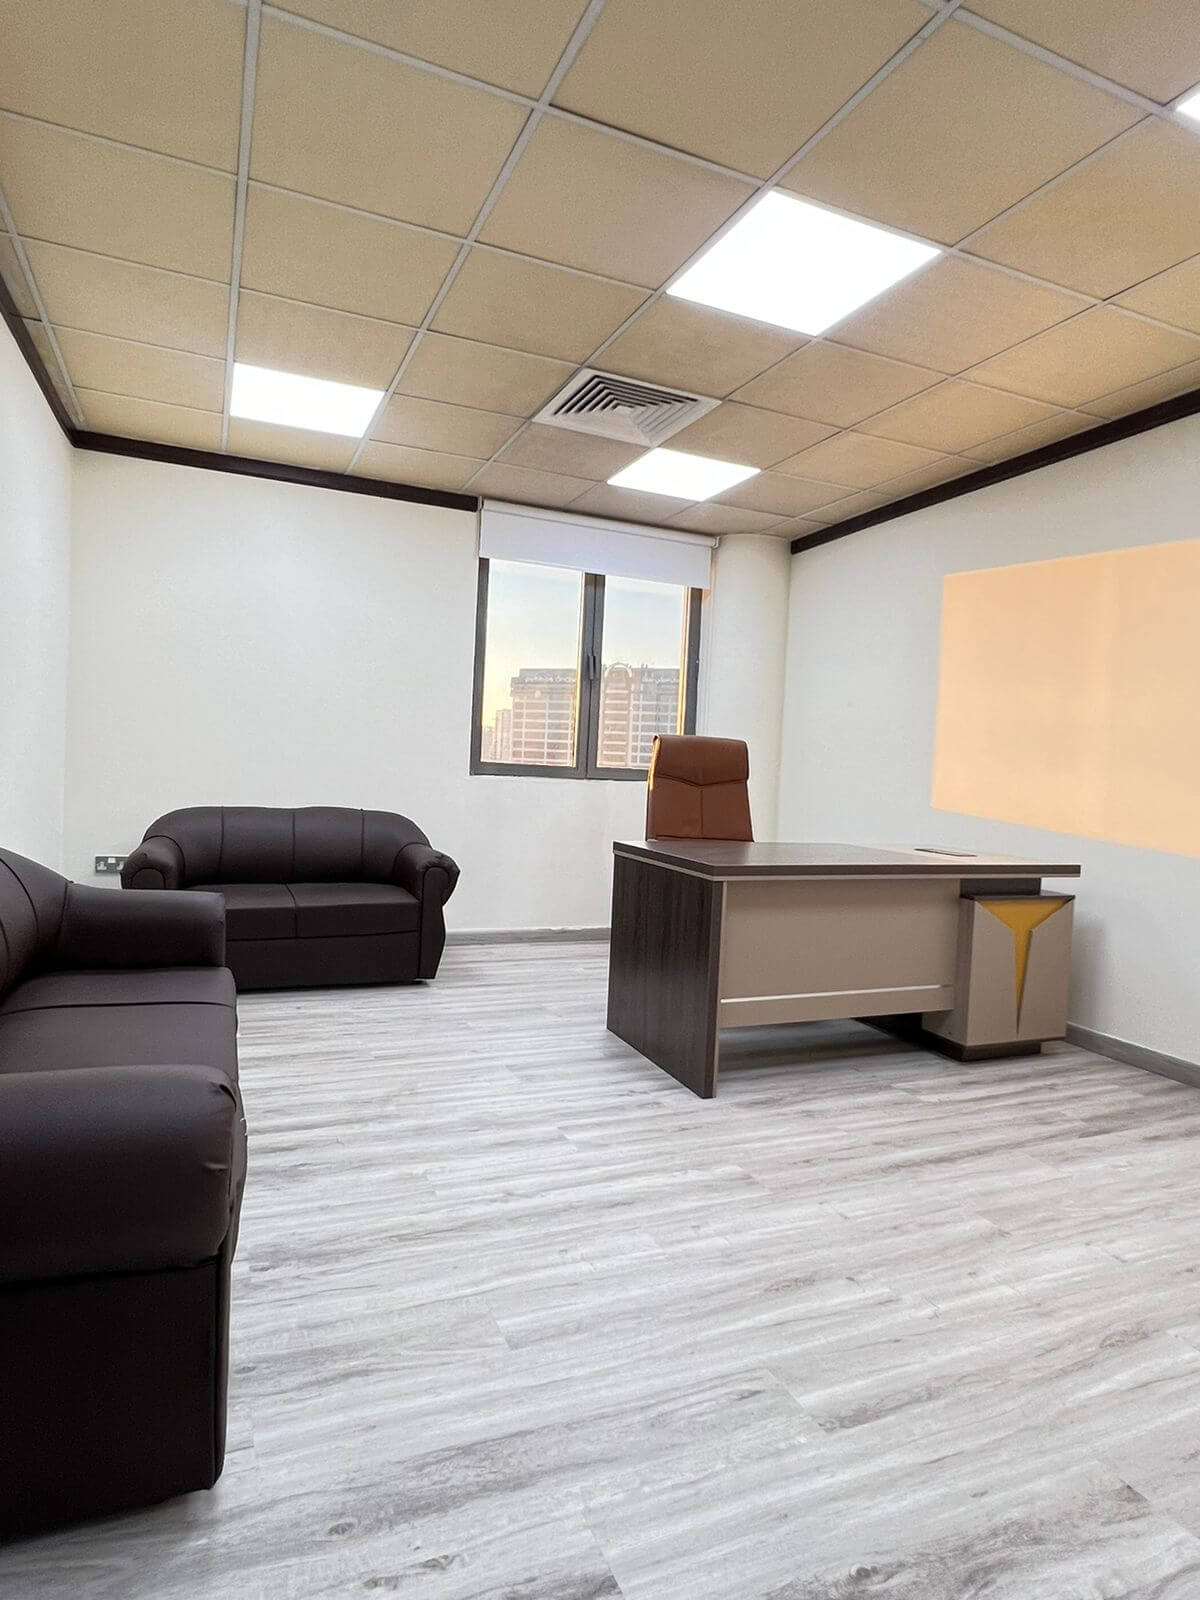 مكاتب فاخرة للإيجار في الشارقة وعجمان | Luxury offices for rent in Sharjah and Ajman